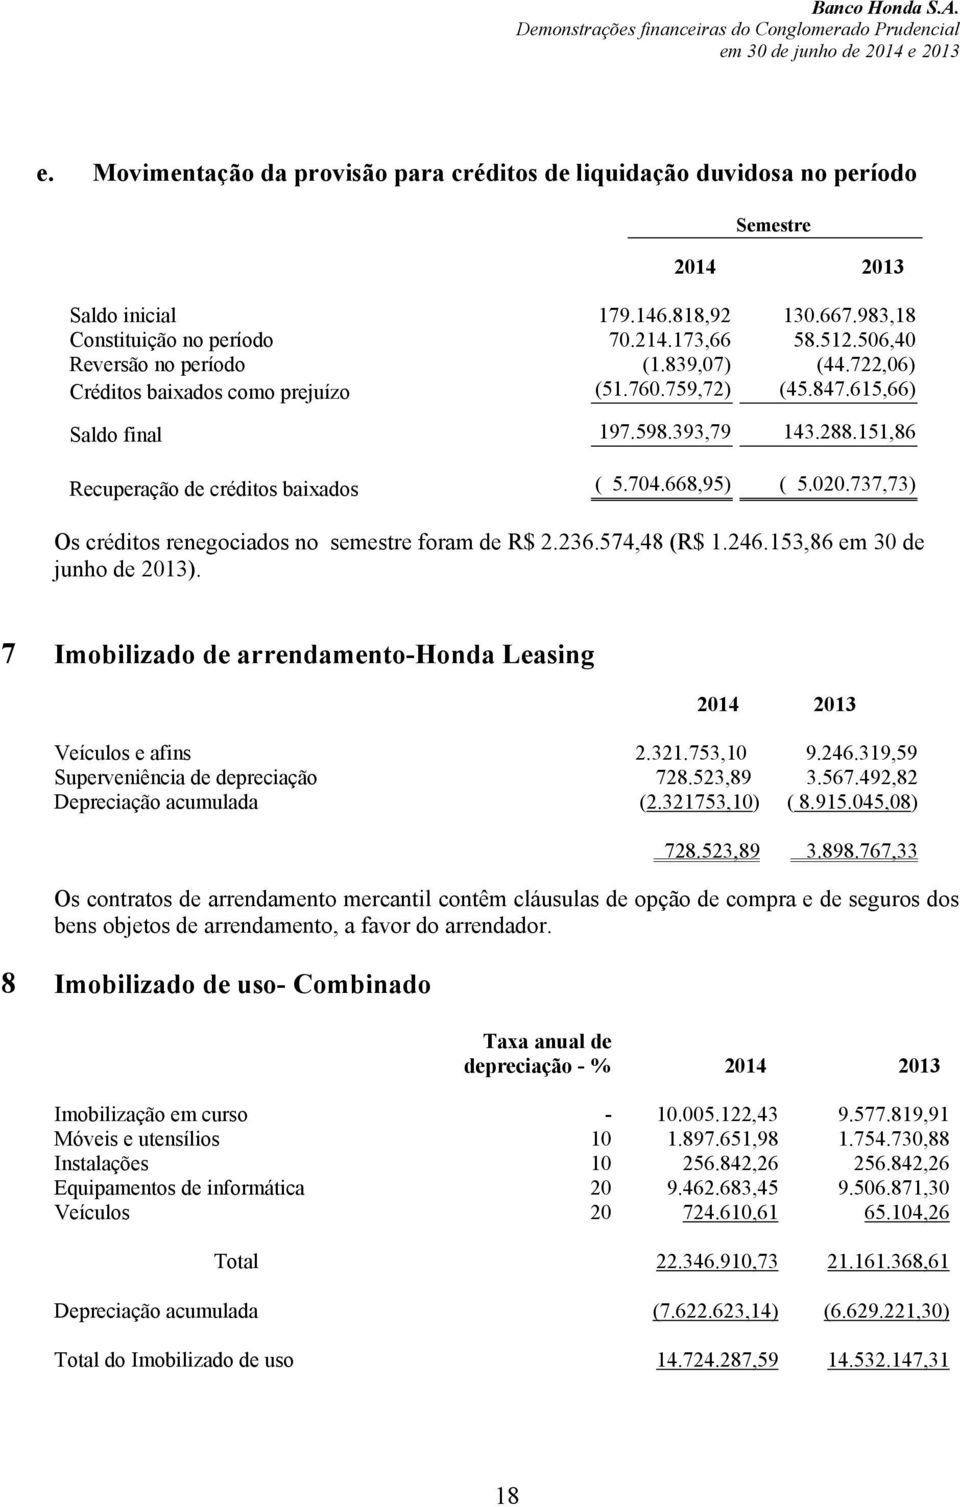 668,95) ( 5.020.737,73) Os créditos renegociados no semestre foram de R$ 2.236.574,48 (R$ 1.246.153,86 em 30 de junho de 2013). 7 Imobilizado de arrendamento-honda Leasing Veículos e afins 2.321.